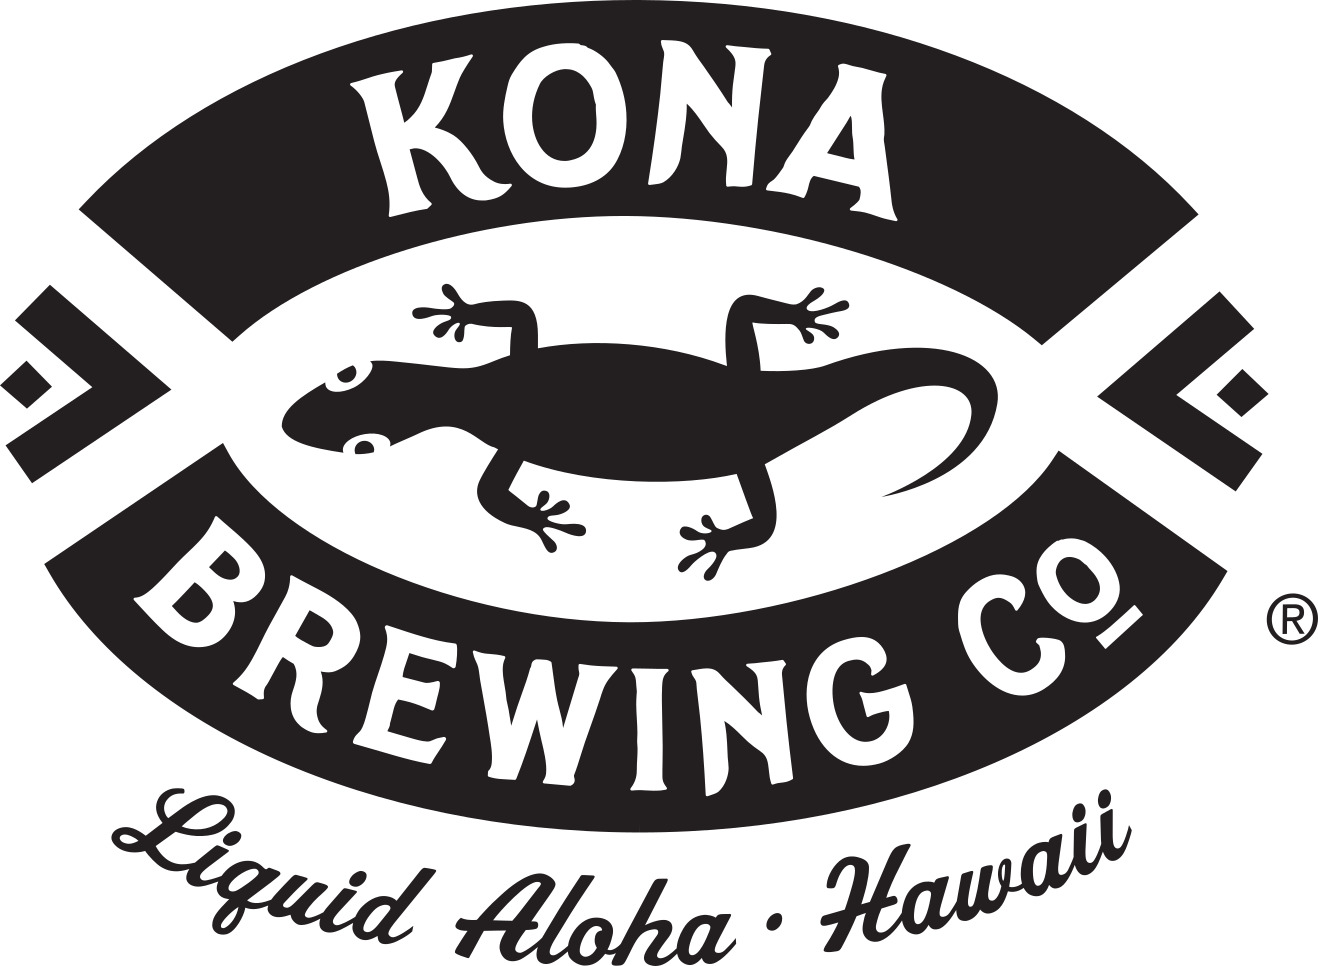  KONA Brewing Company 